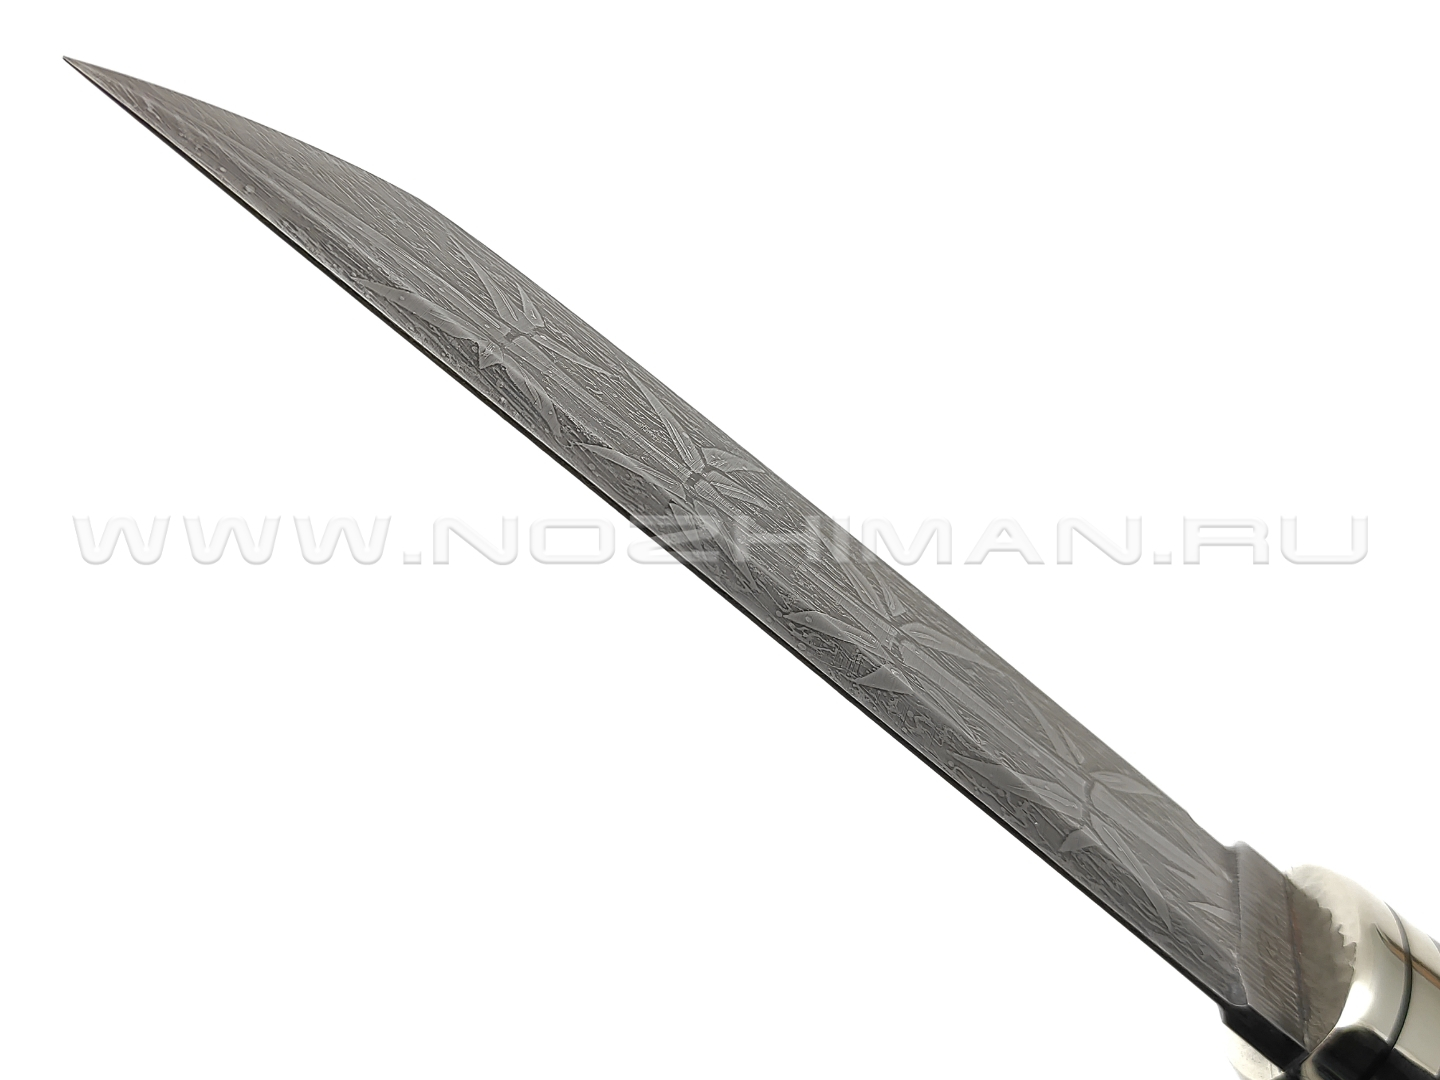 Волчий Век нож Самурай Custom сталь CPM Rex121 WA, рукоять золотой карбон, нейзильбер, G10